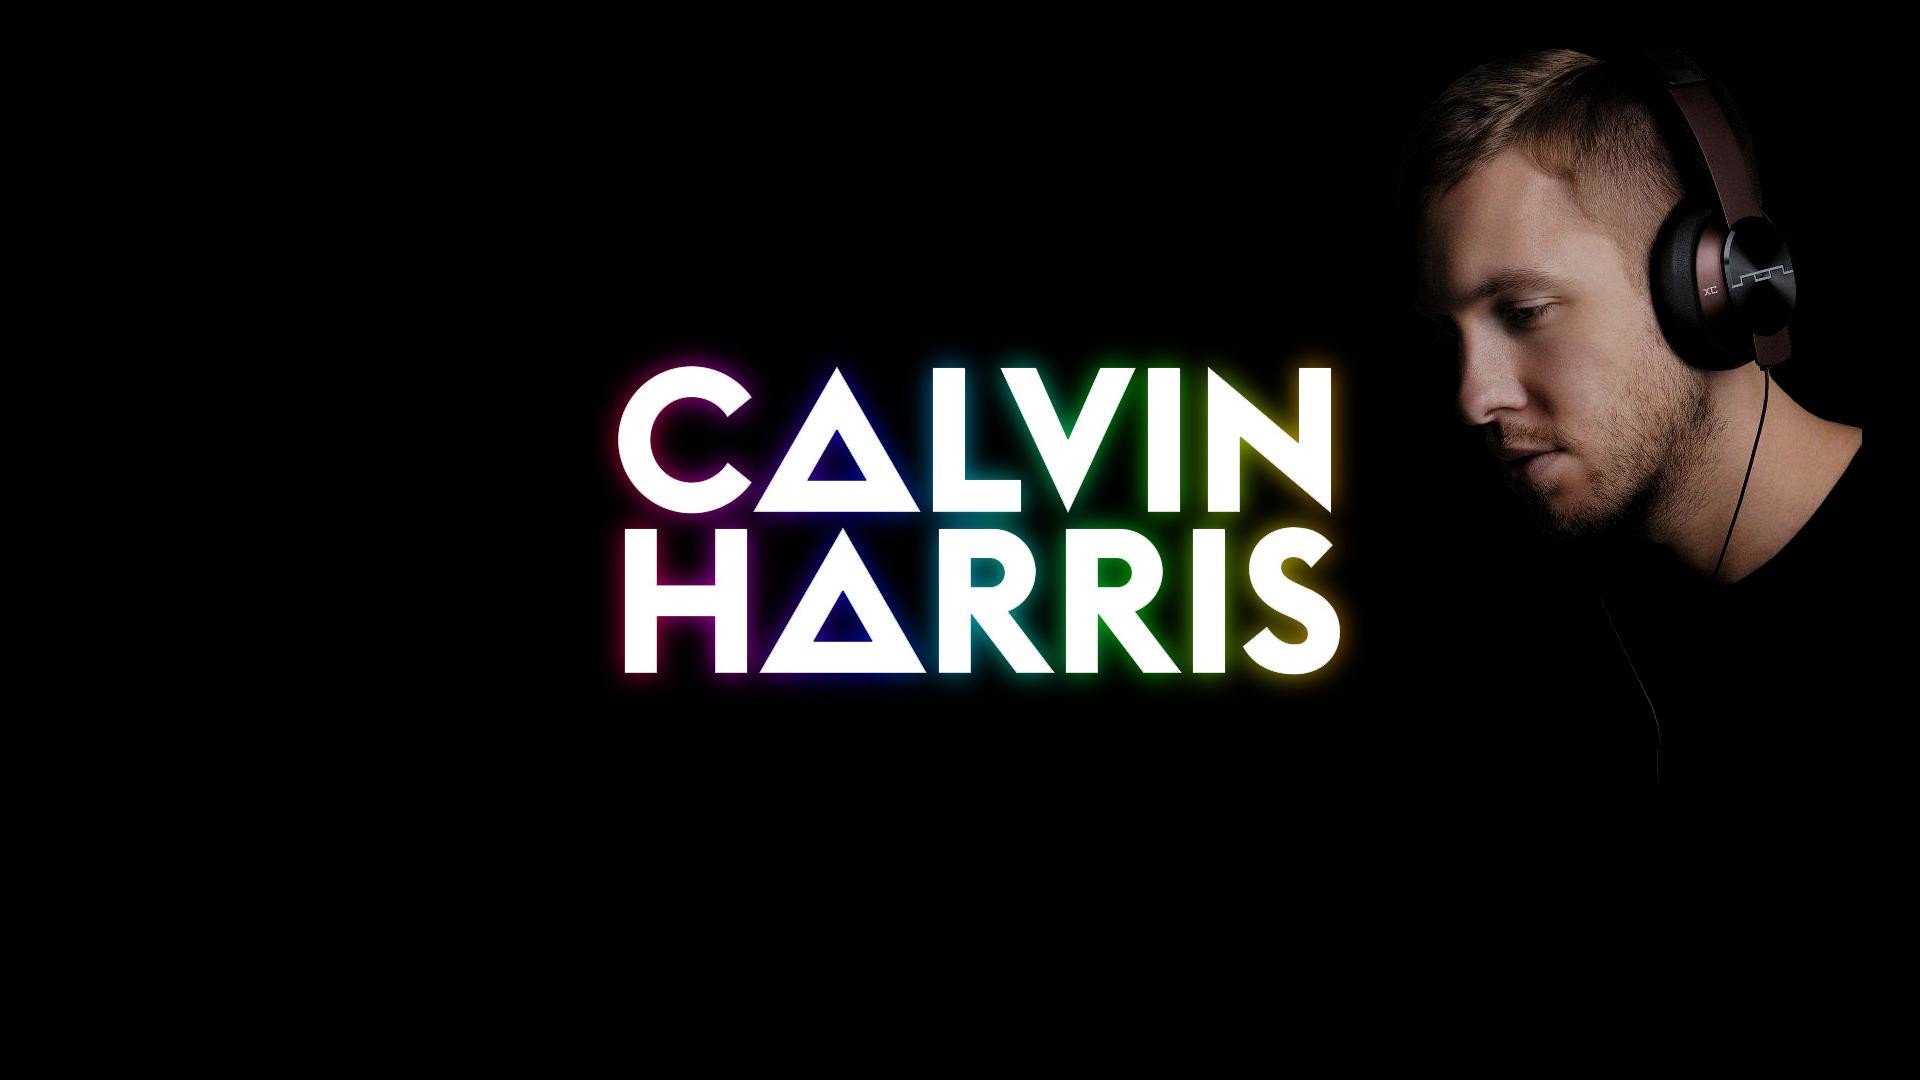 1920x1080 Calvin Harris HD Images 3 | Calvin Harris HD Images | Pinterest | Calvin  harris and Hd images